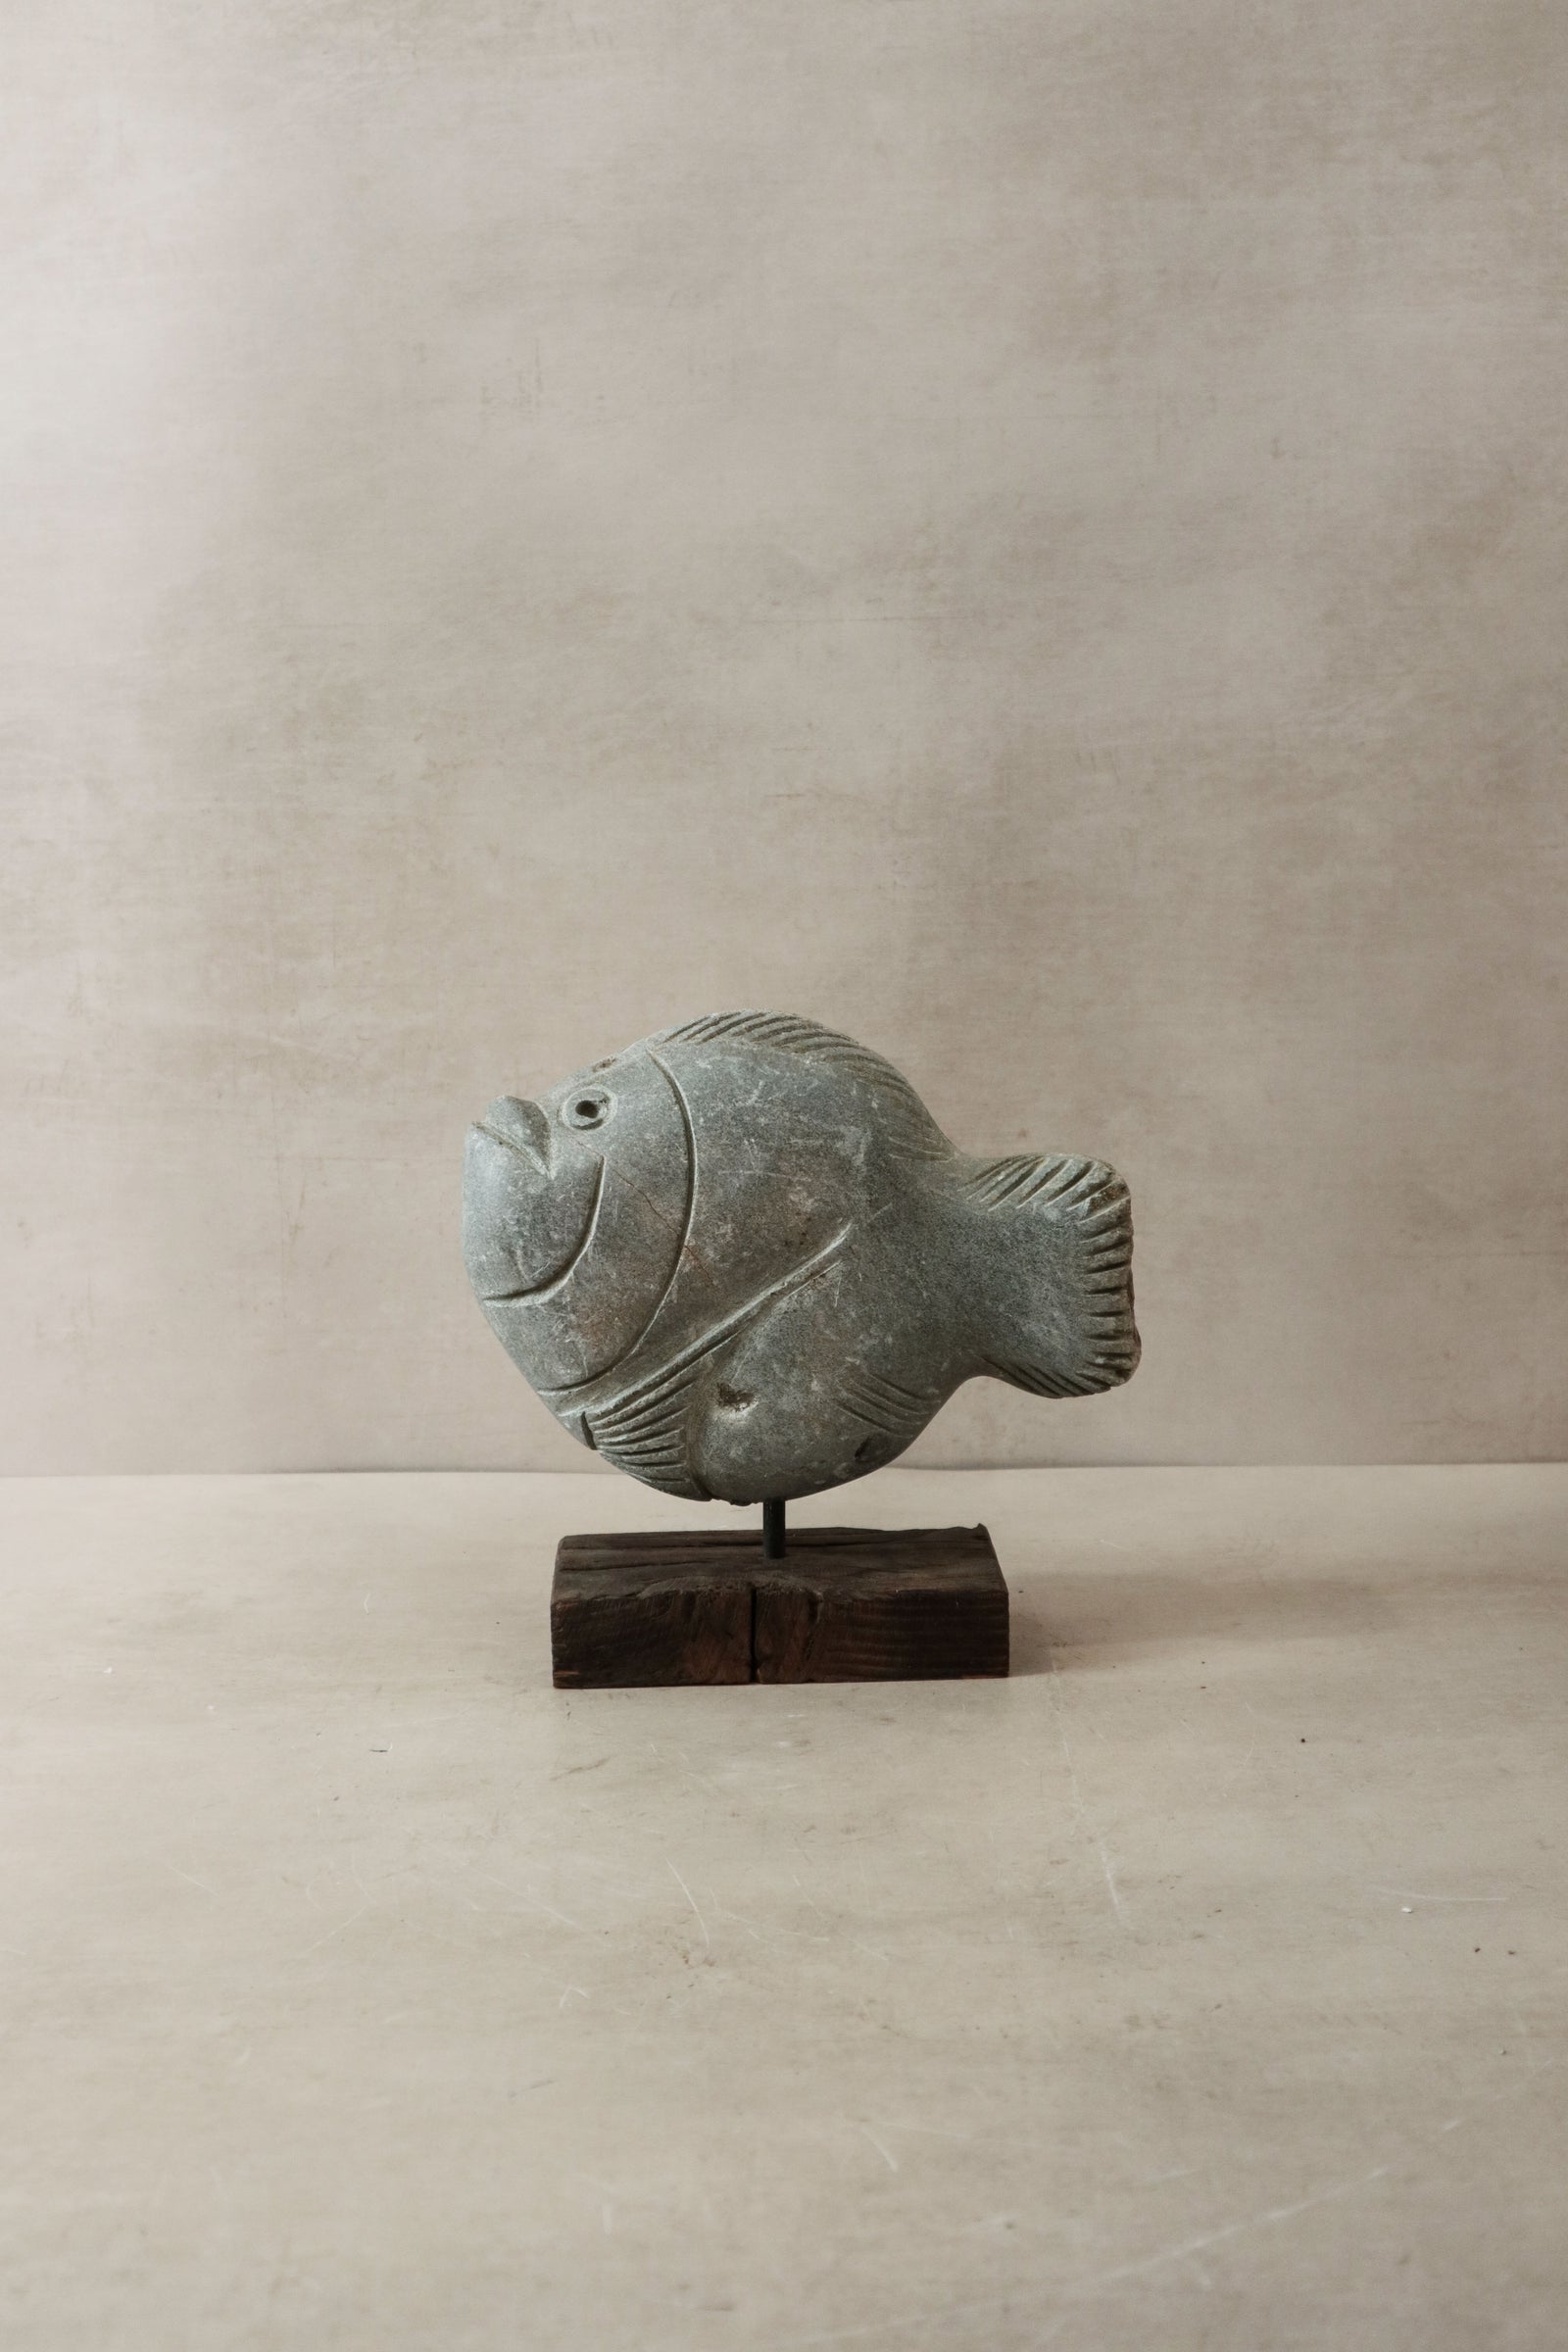 Stone Fish Sculpture - Zimbabwe - 31.6